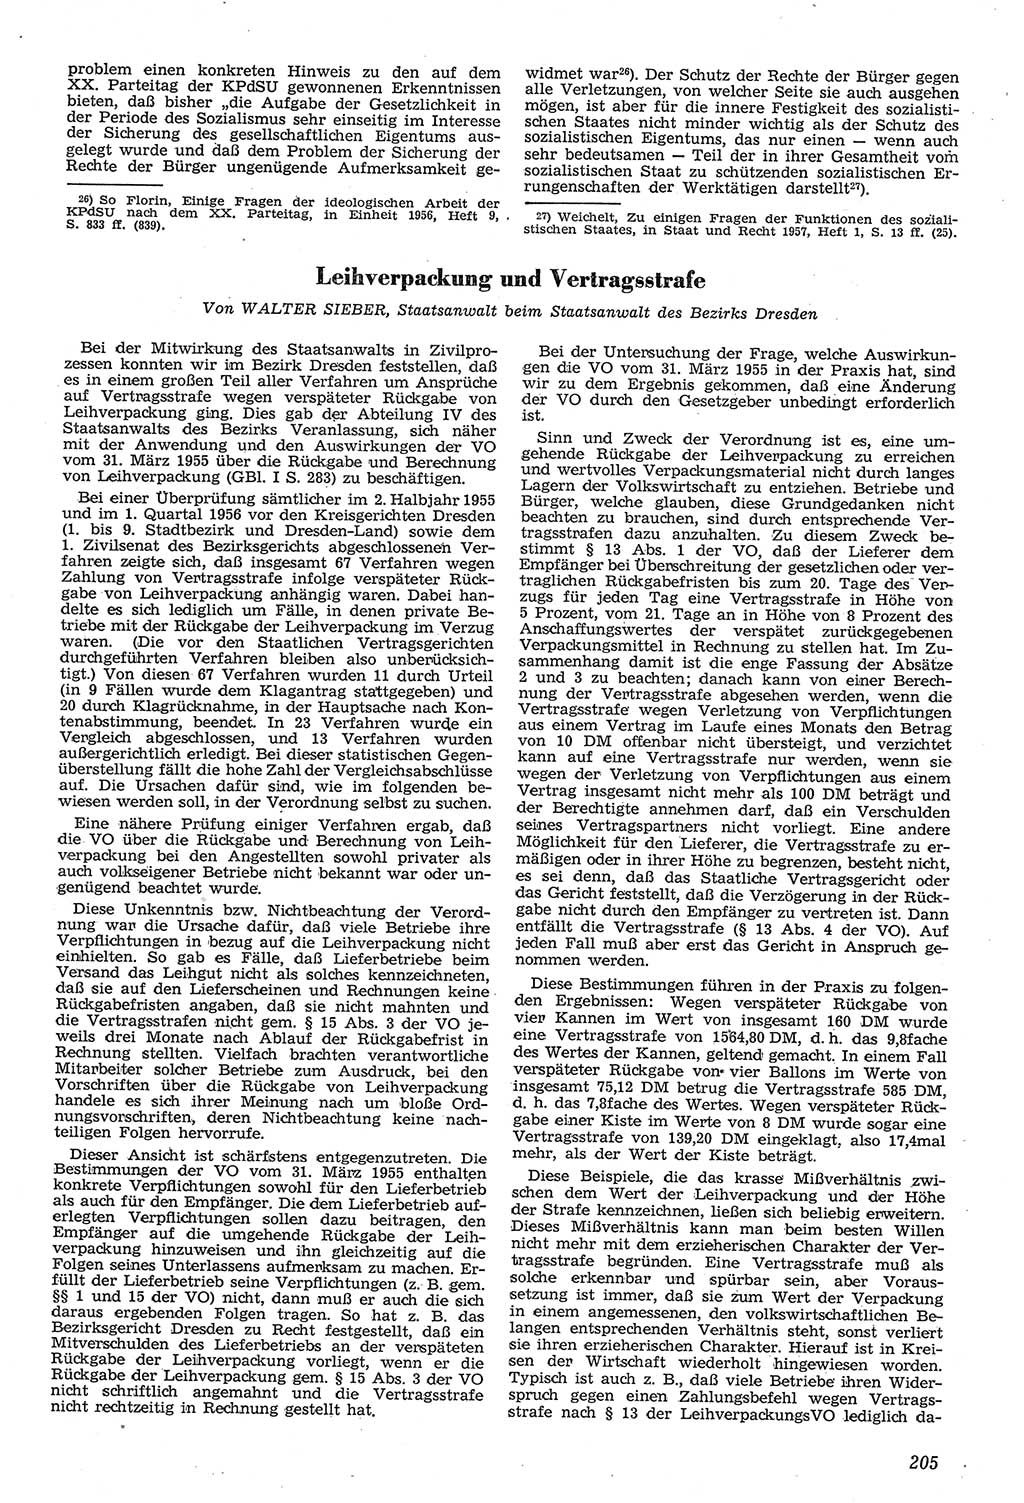 Neue Justiz (NJ), Zeitschrift für Recht und Rechtswissenschaft [Deutsche Demokratische Republik (DDR)], 11. Jahrgang 1957, Seite 205 (NJ DDR 1957, S. 205)